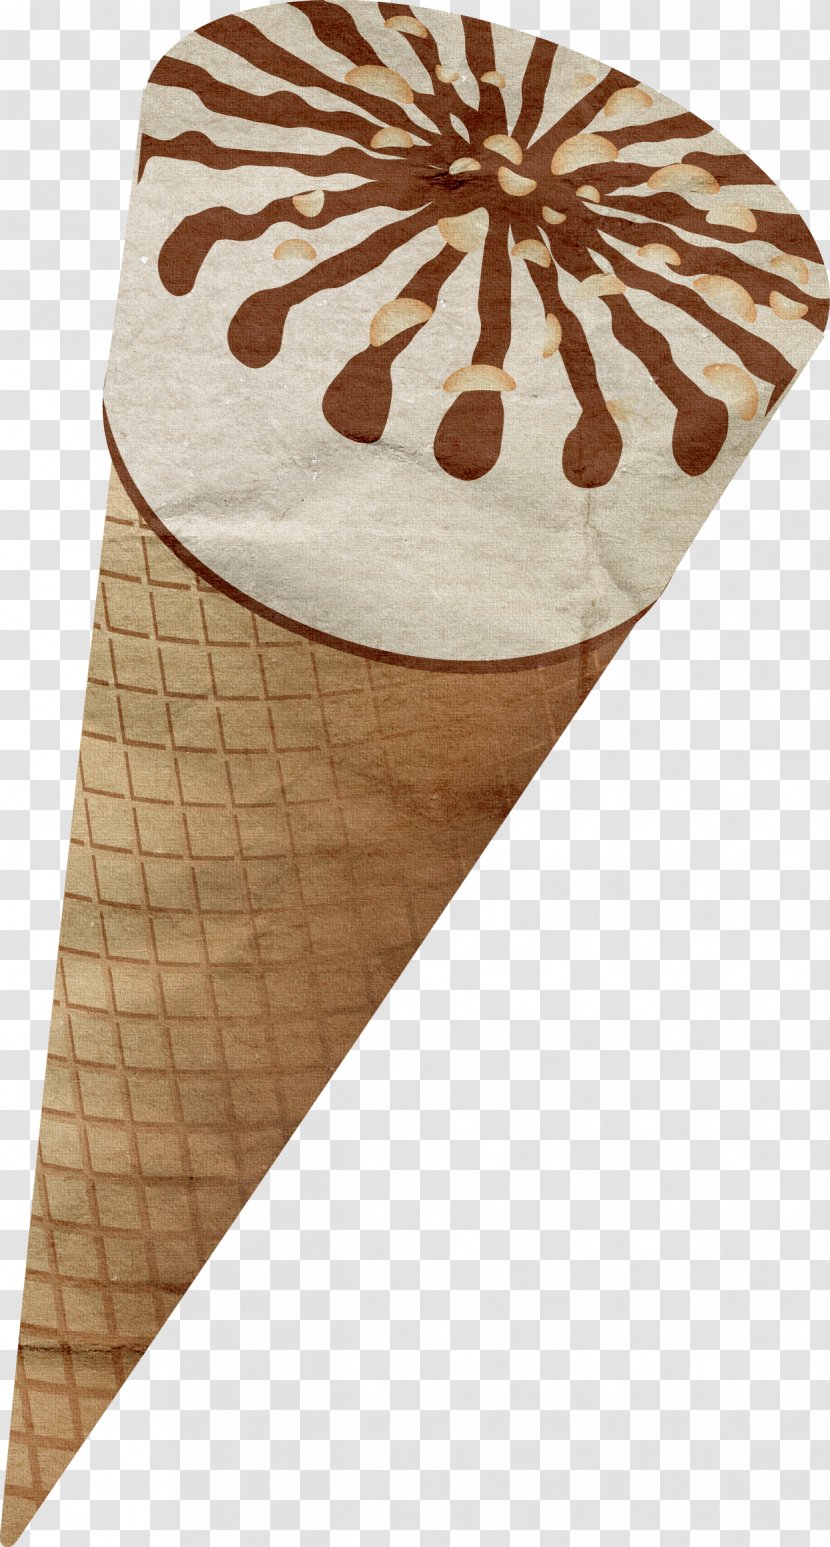 Ice Cream Cones Clip Art - Table Transparent PNG